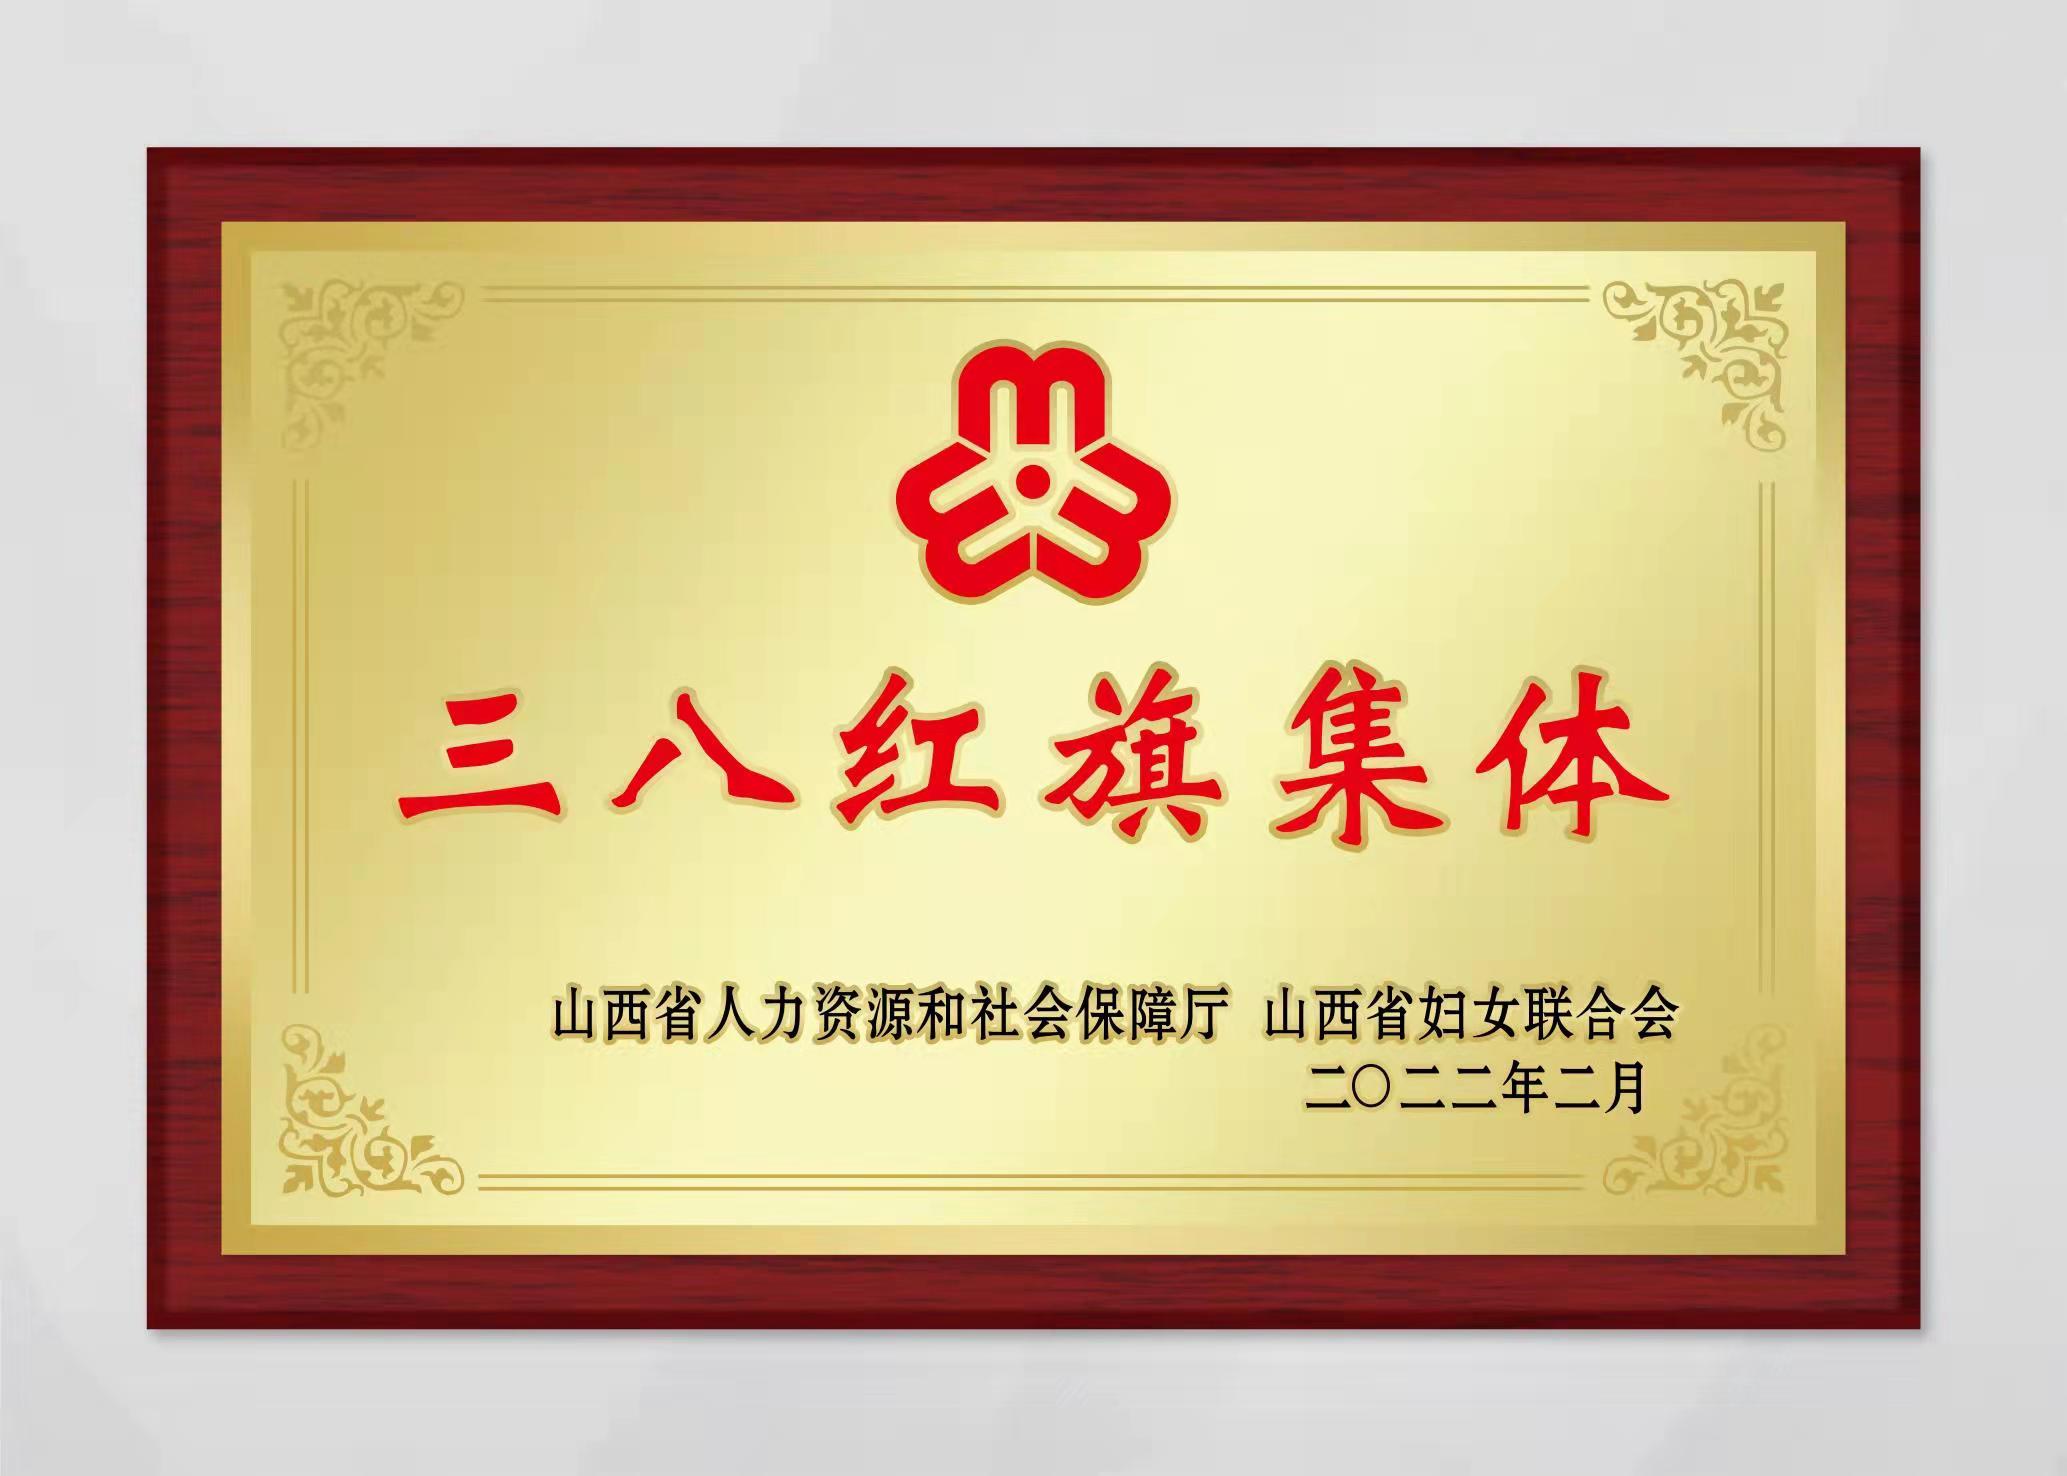 山西中科潞安紫外光電科技有限公司被評為山西省三八婦女先進集體。